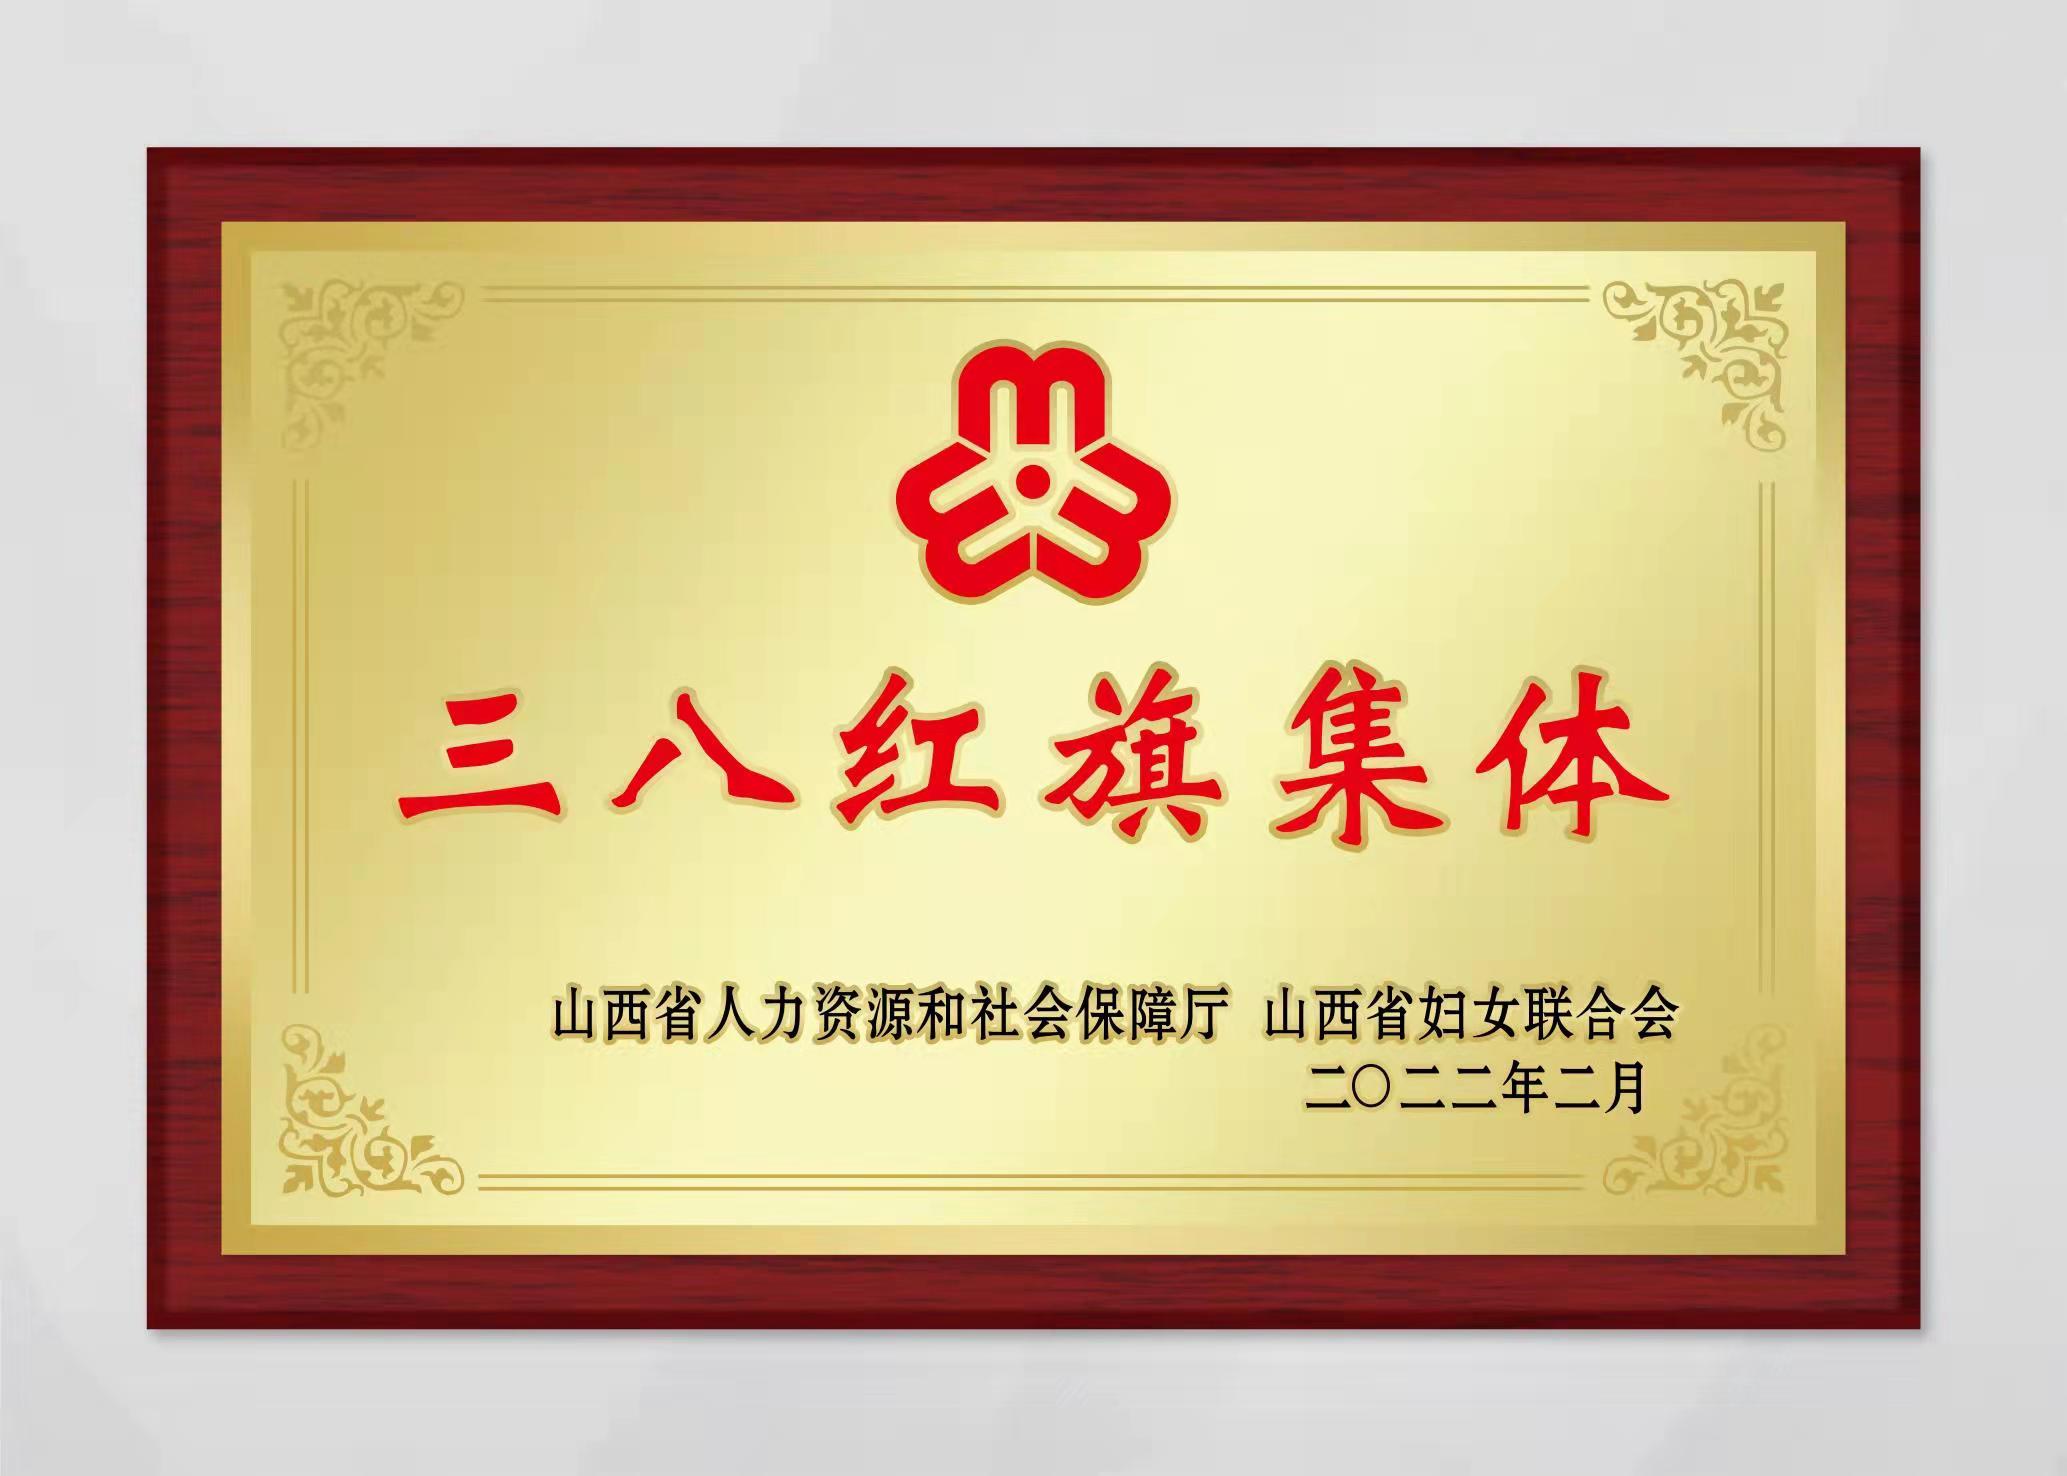 山西中科潞安紫外光電科技有限公司被評為山西省三八婦女先進集體。